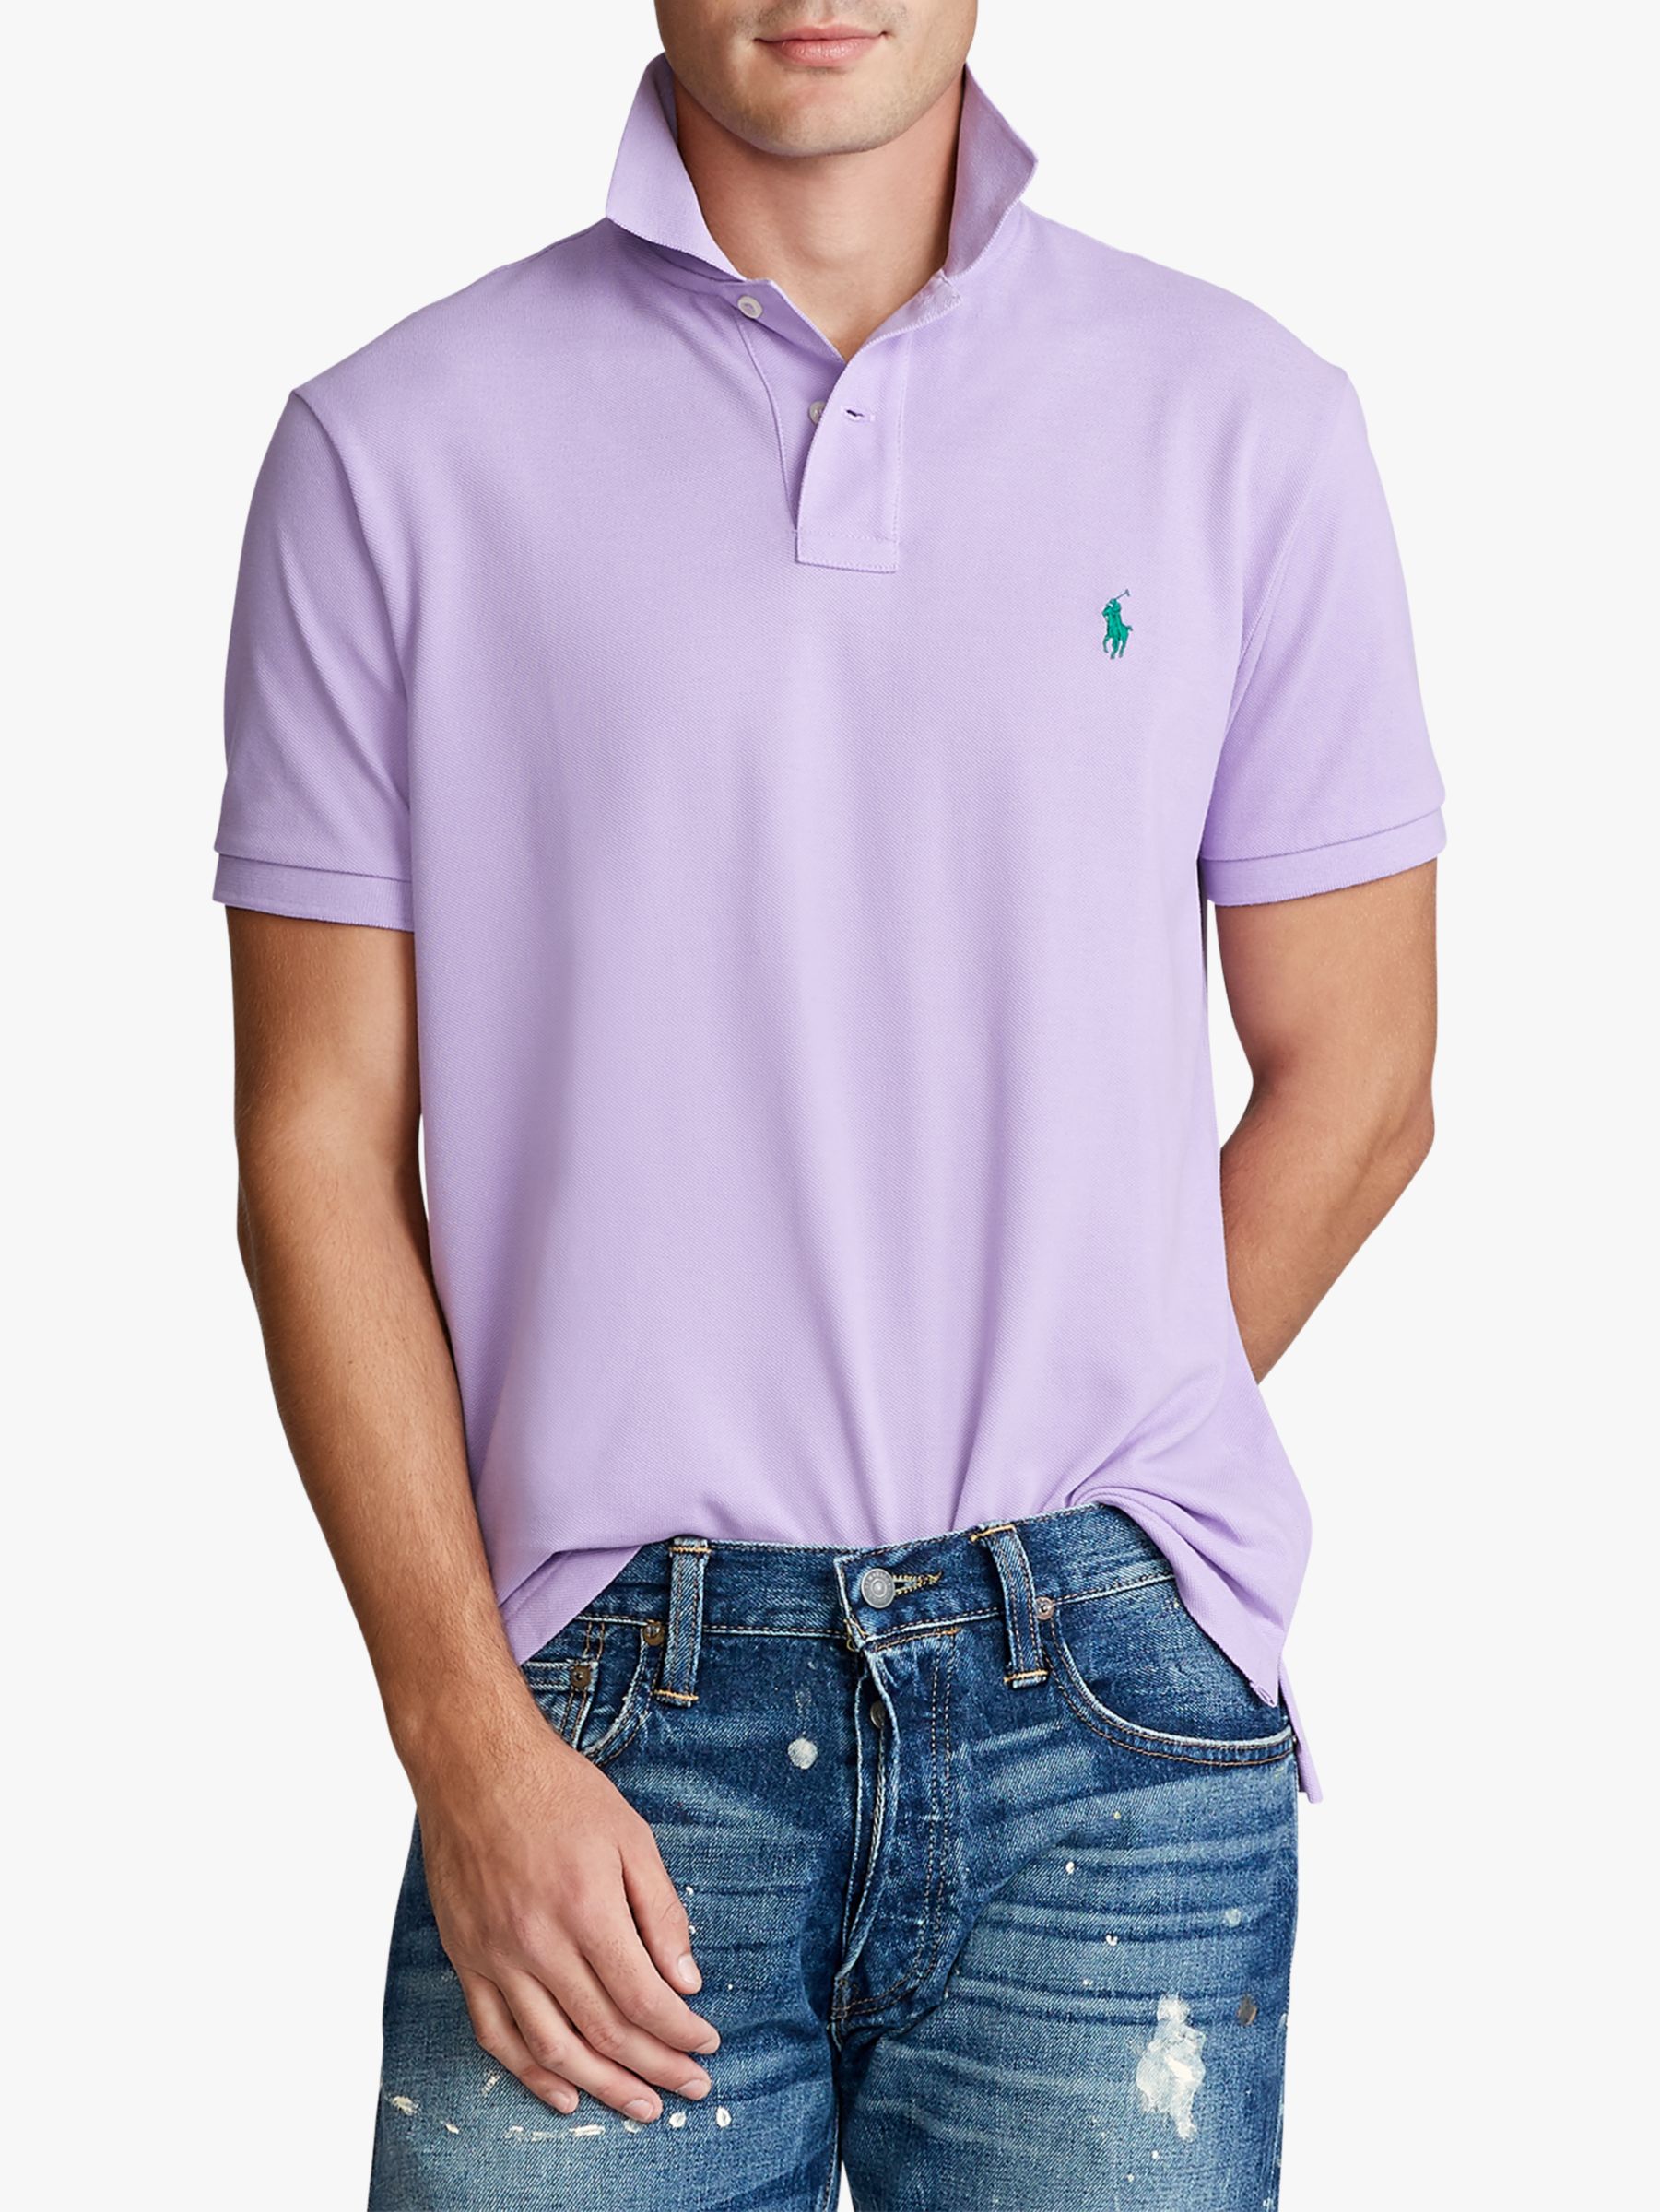 lavender ralph lauren shirt